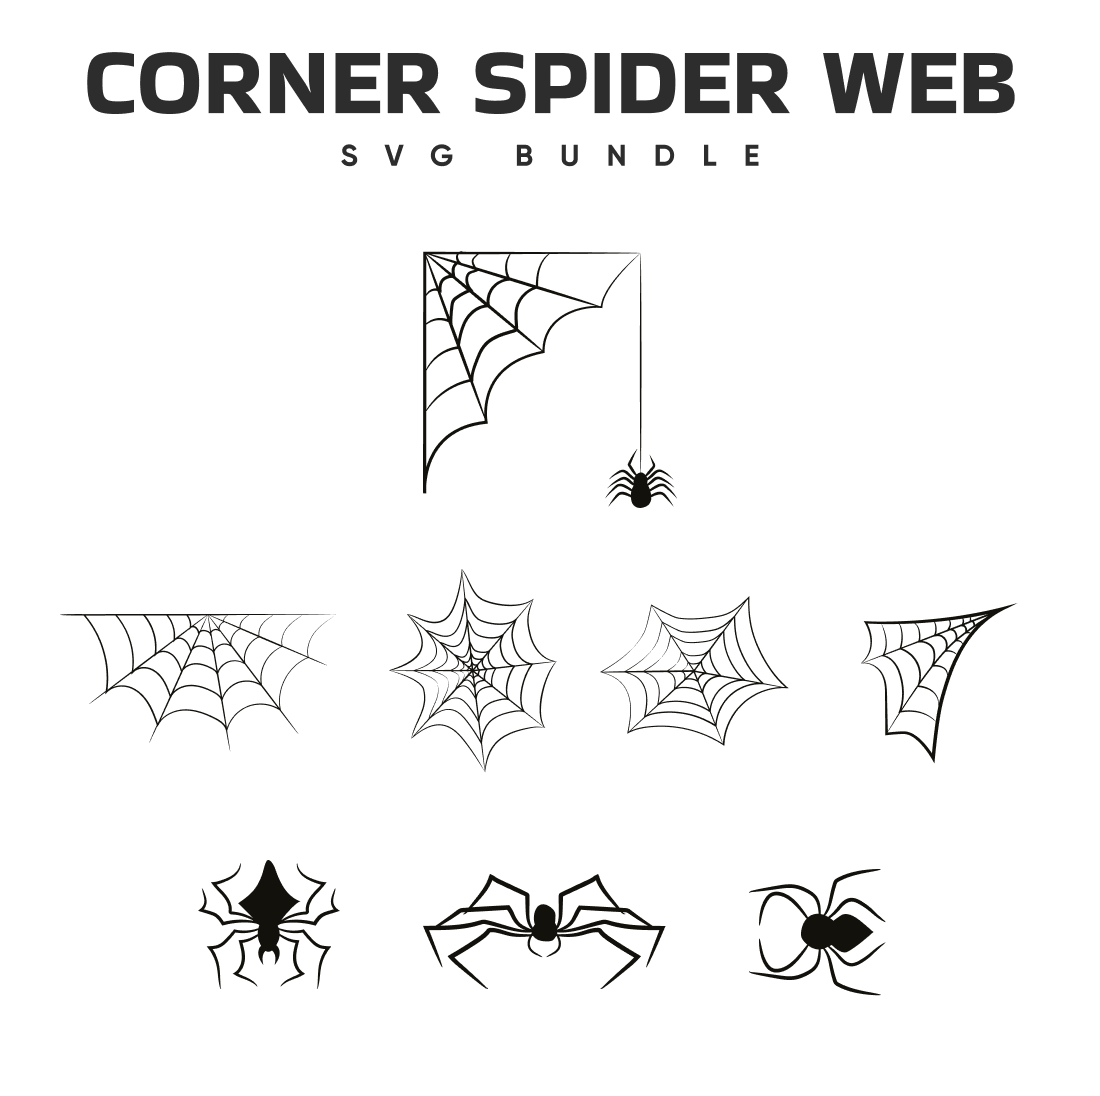 The corner spider web svg bundle.